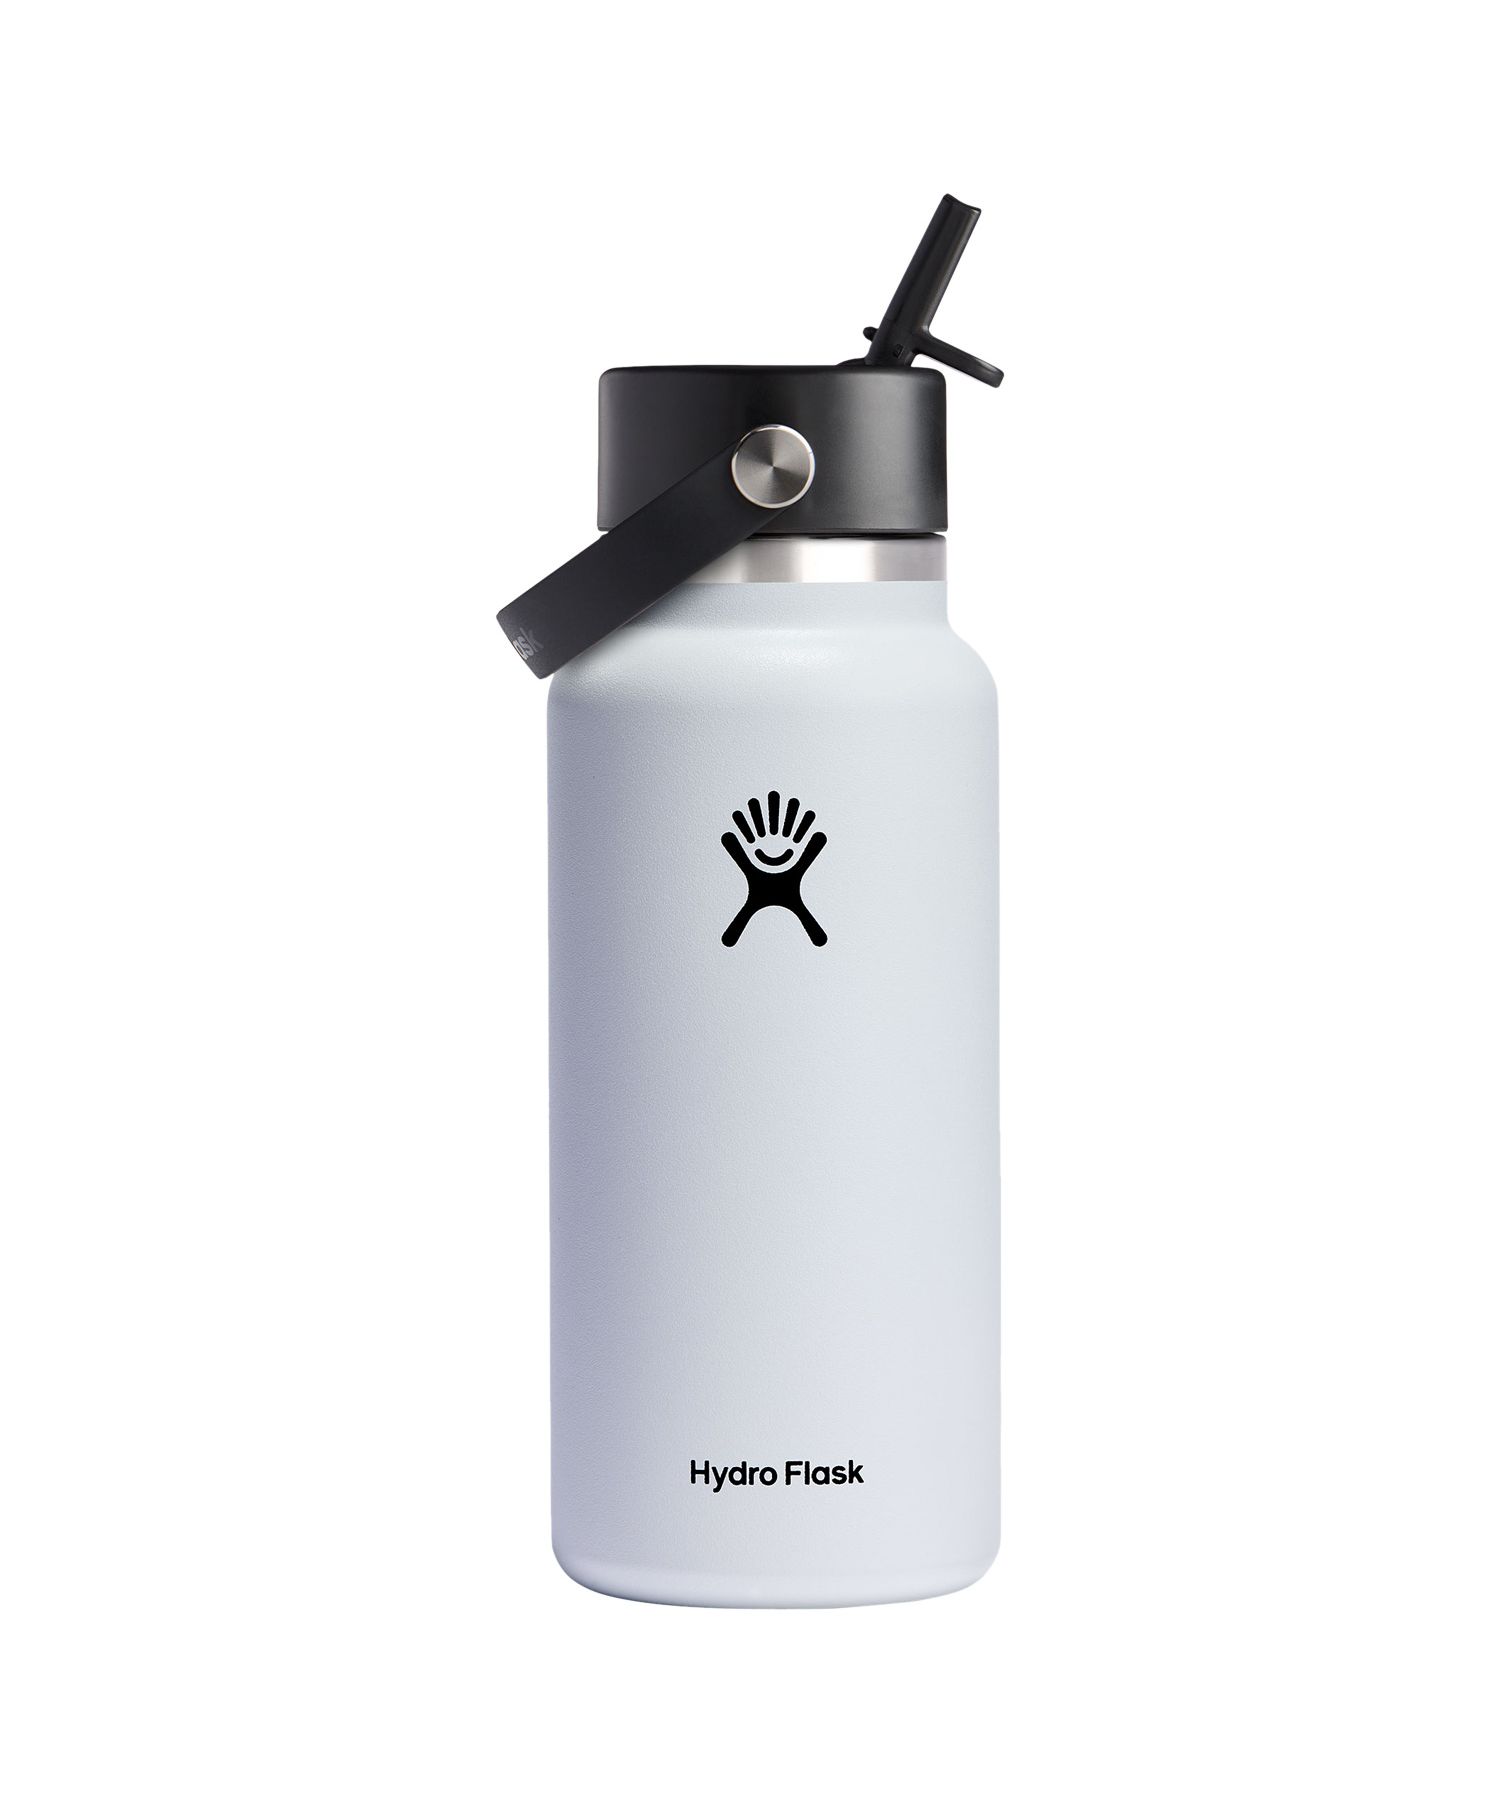 ハイドロフラスク(HydroFlask) |ハイドロフラスク Hydro Flask 32oz 